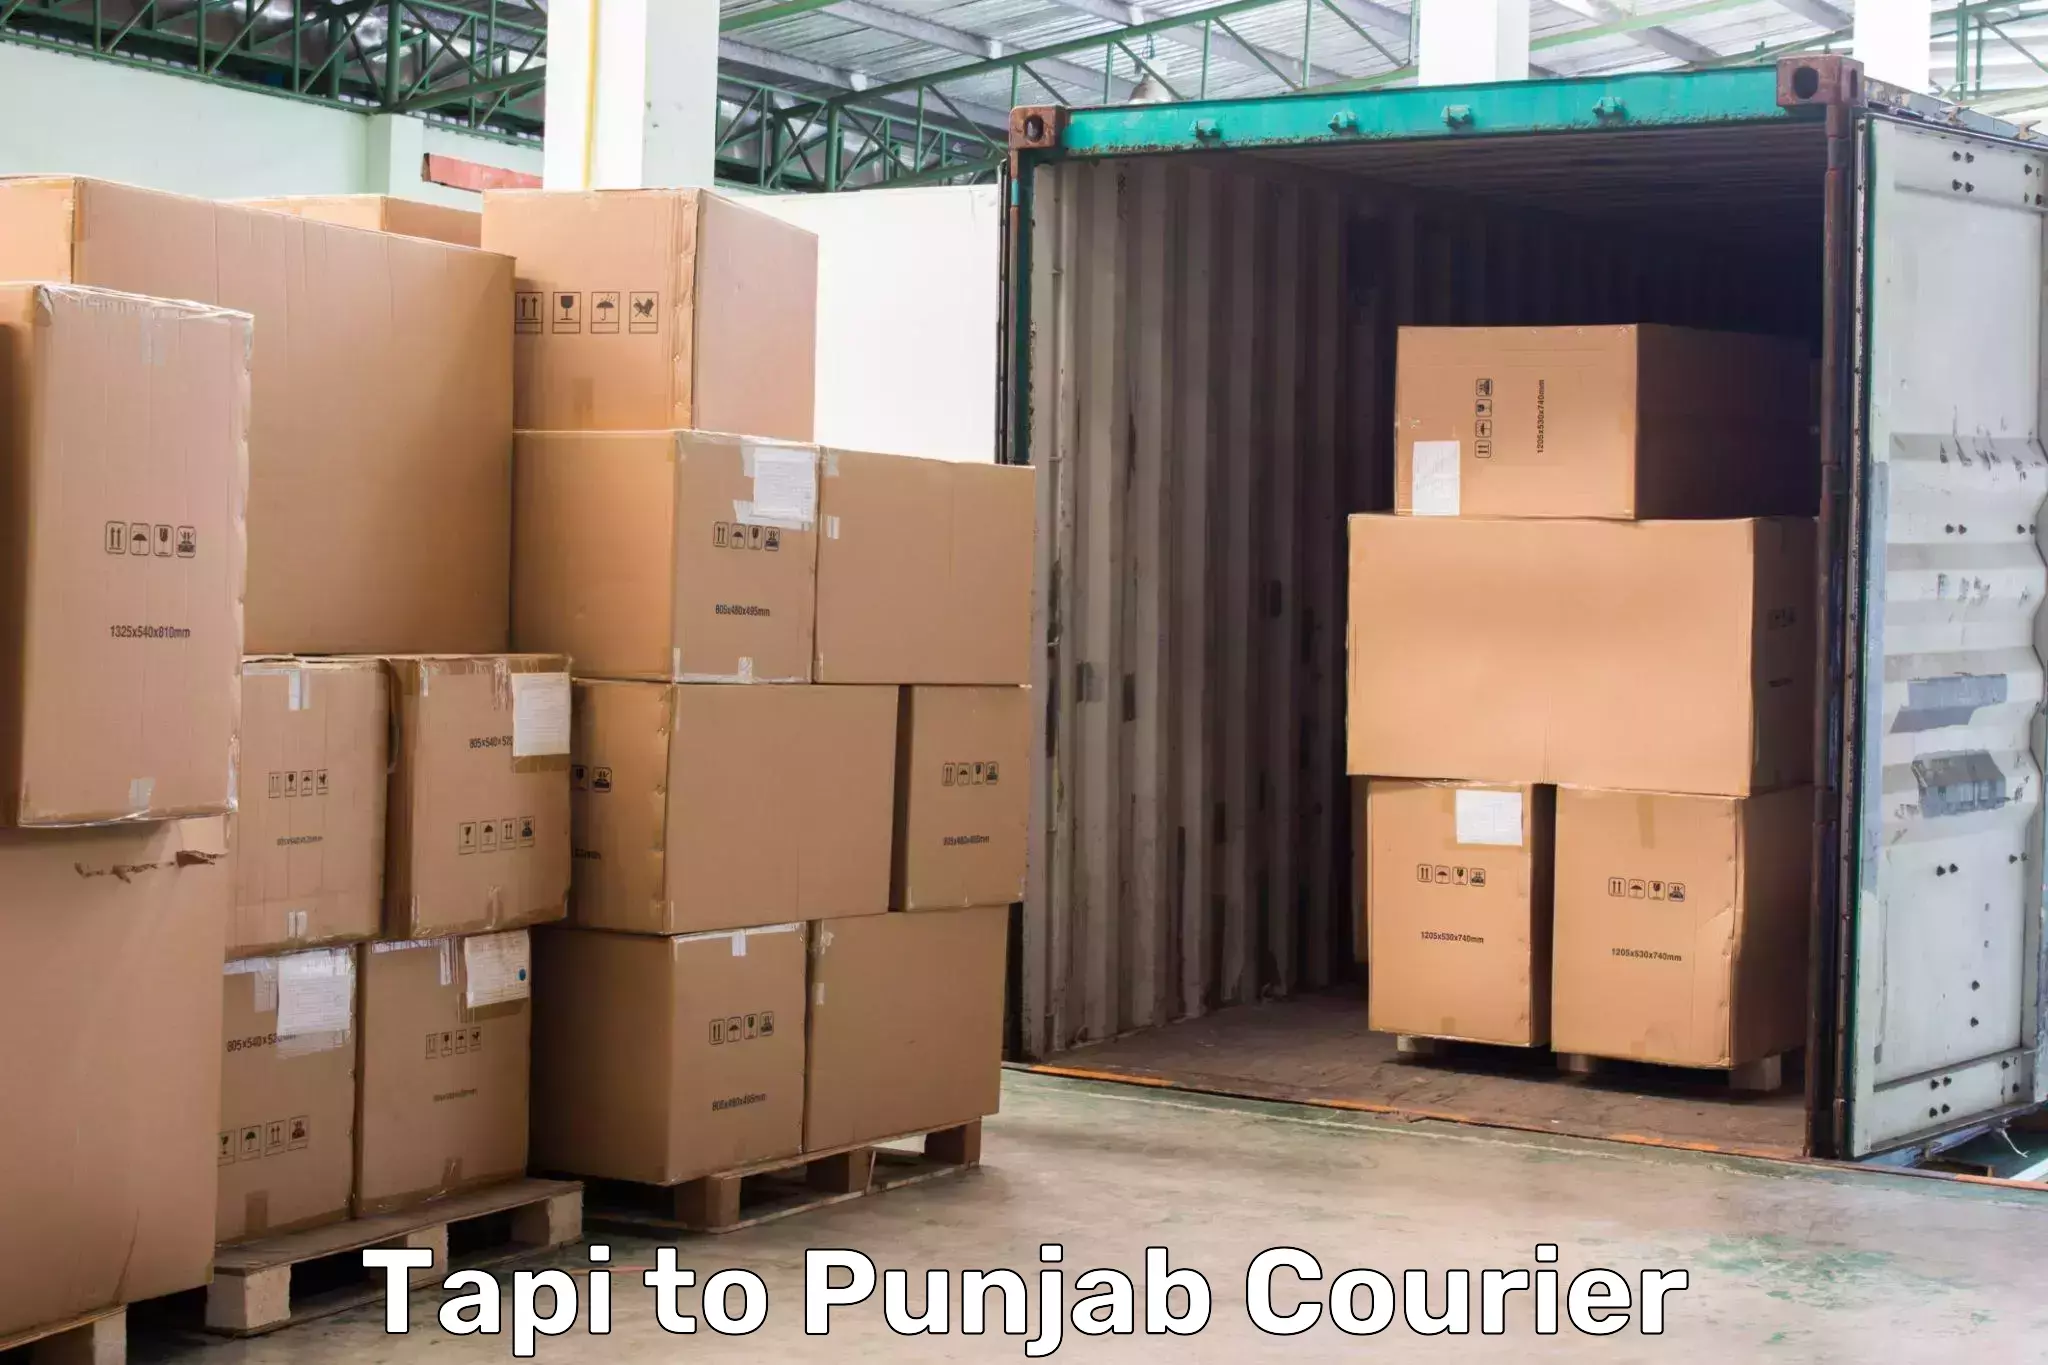 Express package transport Tapi to Punjab